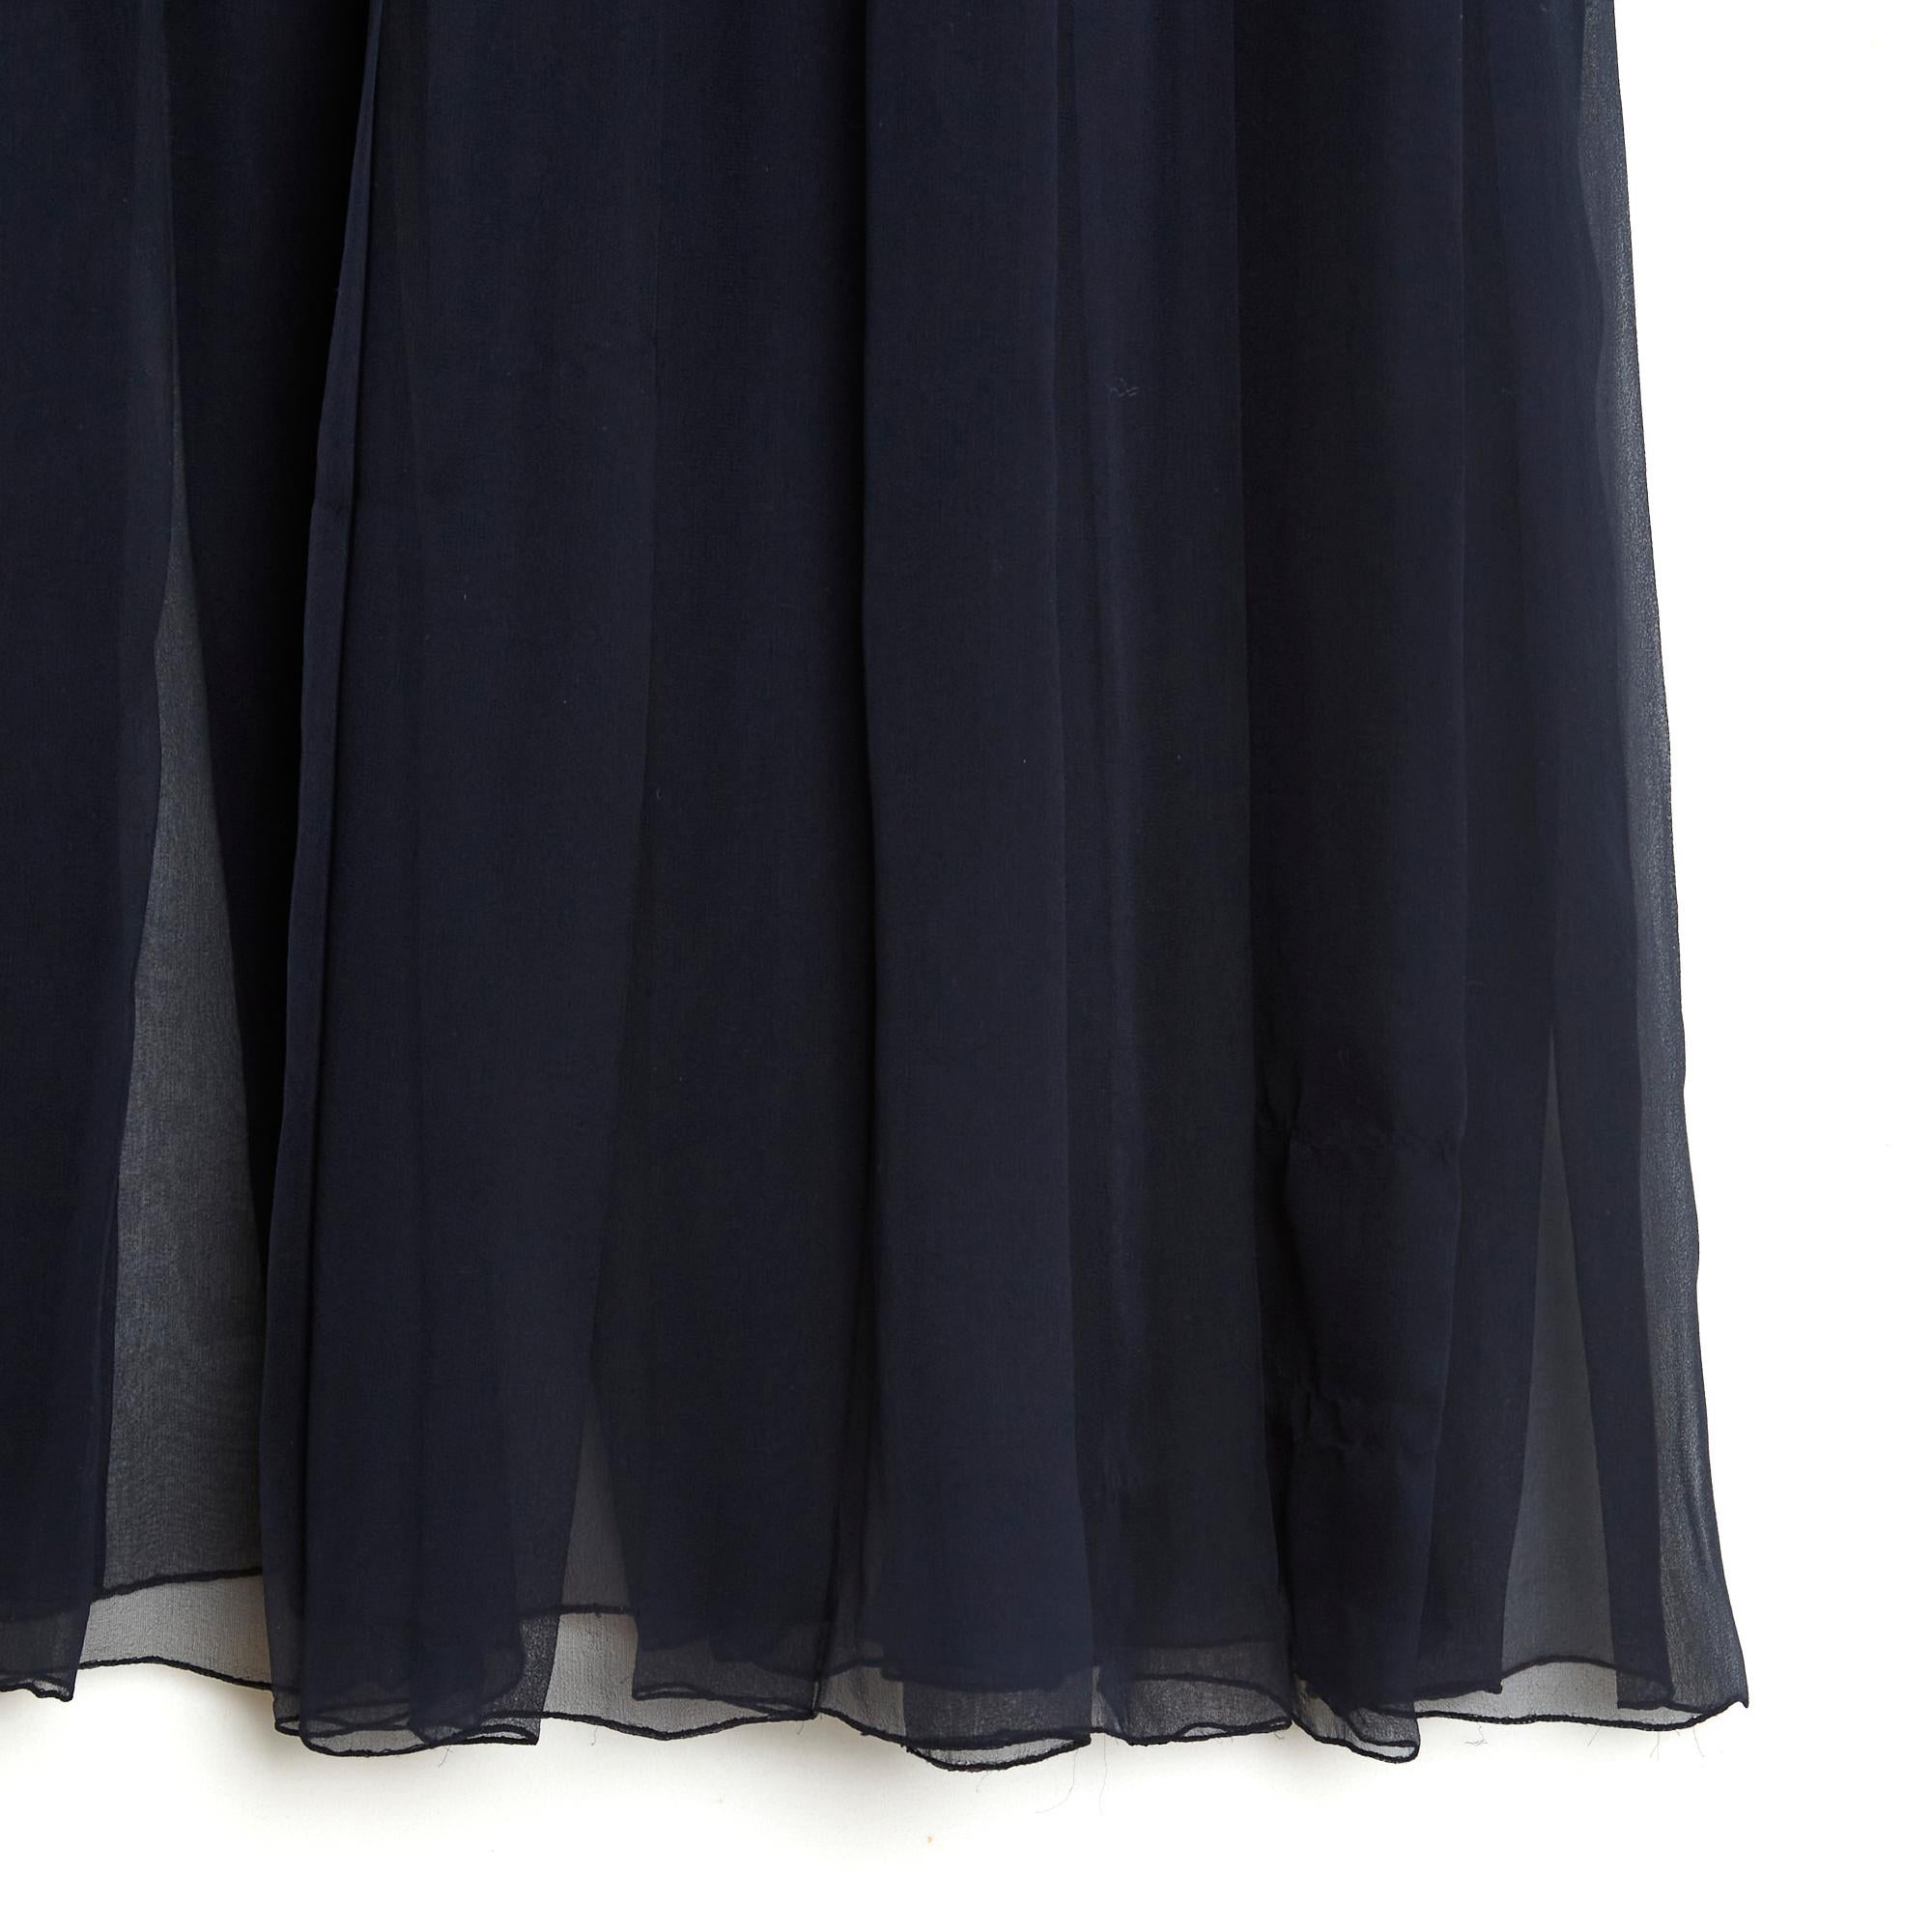 Jupe Chanel Haute Couture en mousseline de soie bleu marine, longueur cheville, plissée au bas de la jupe (à partir du dessus du genou), doublée de mousseline de soie sur la partie supérieure, fermée par un zip et un crochet. Pas de composition ni